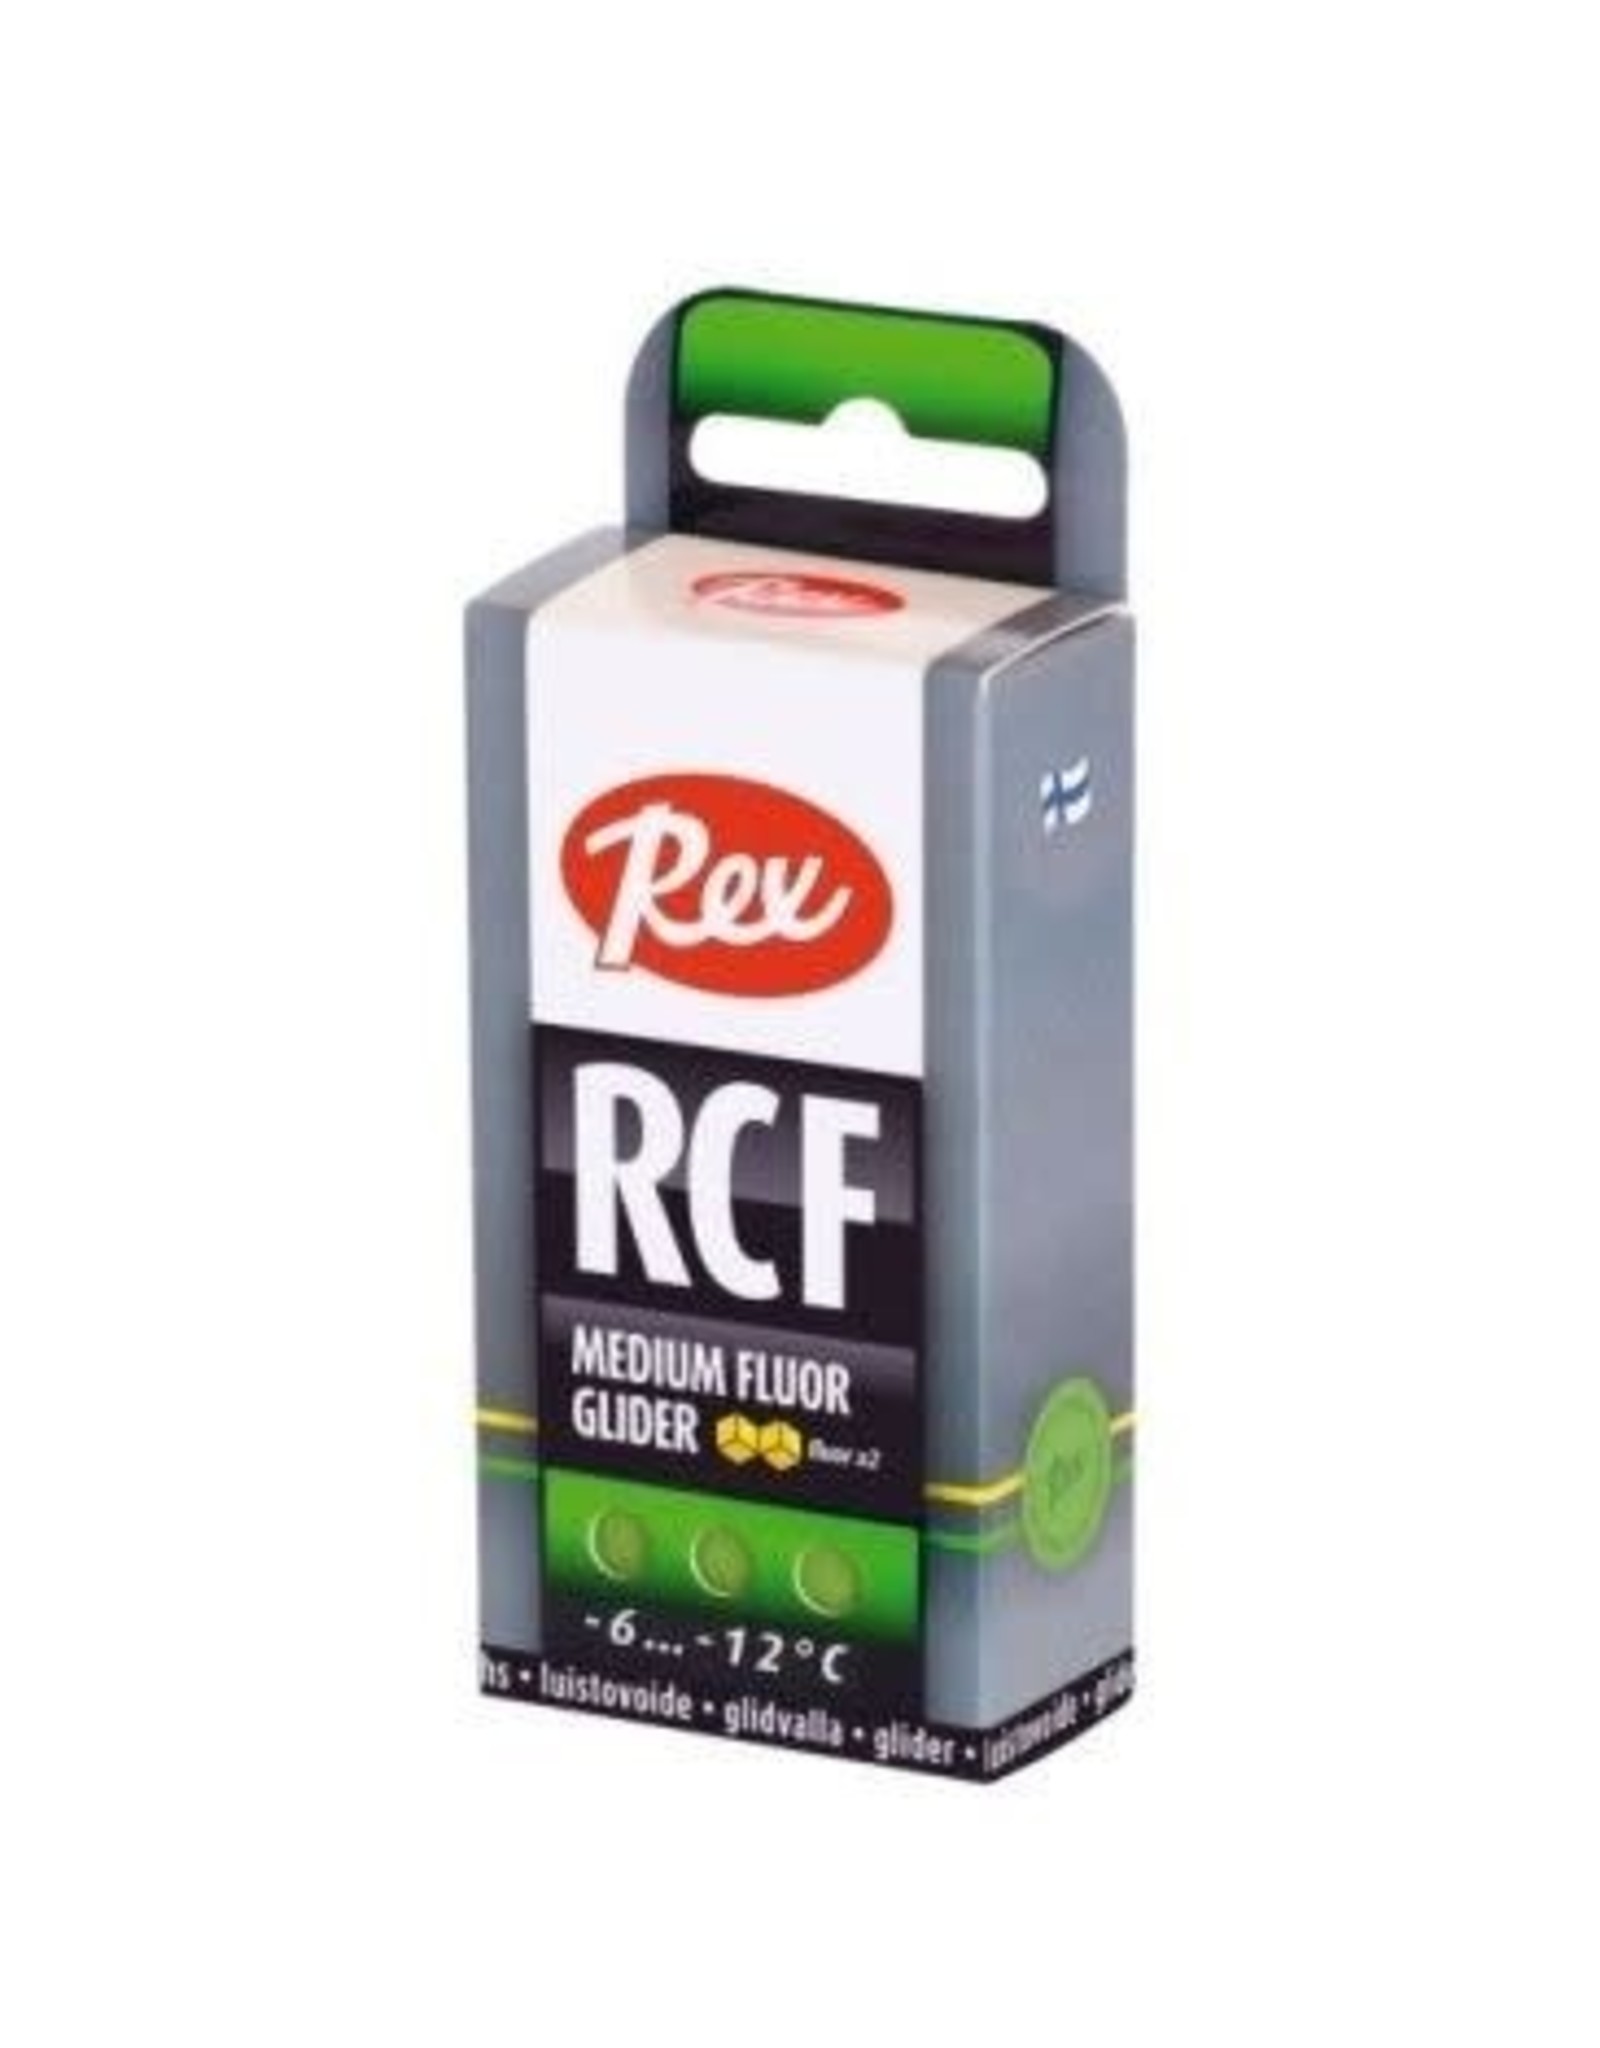 Rex Rex Glide RCF Green